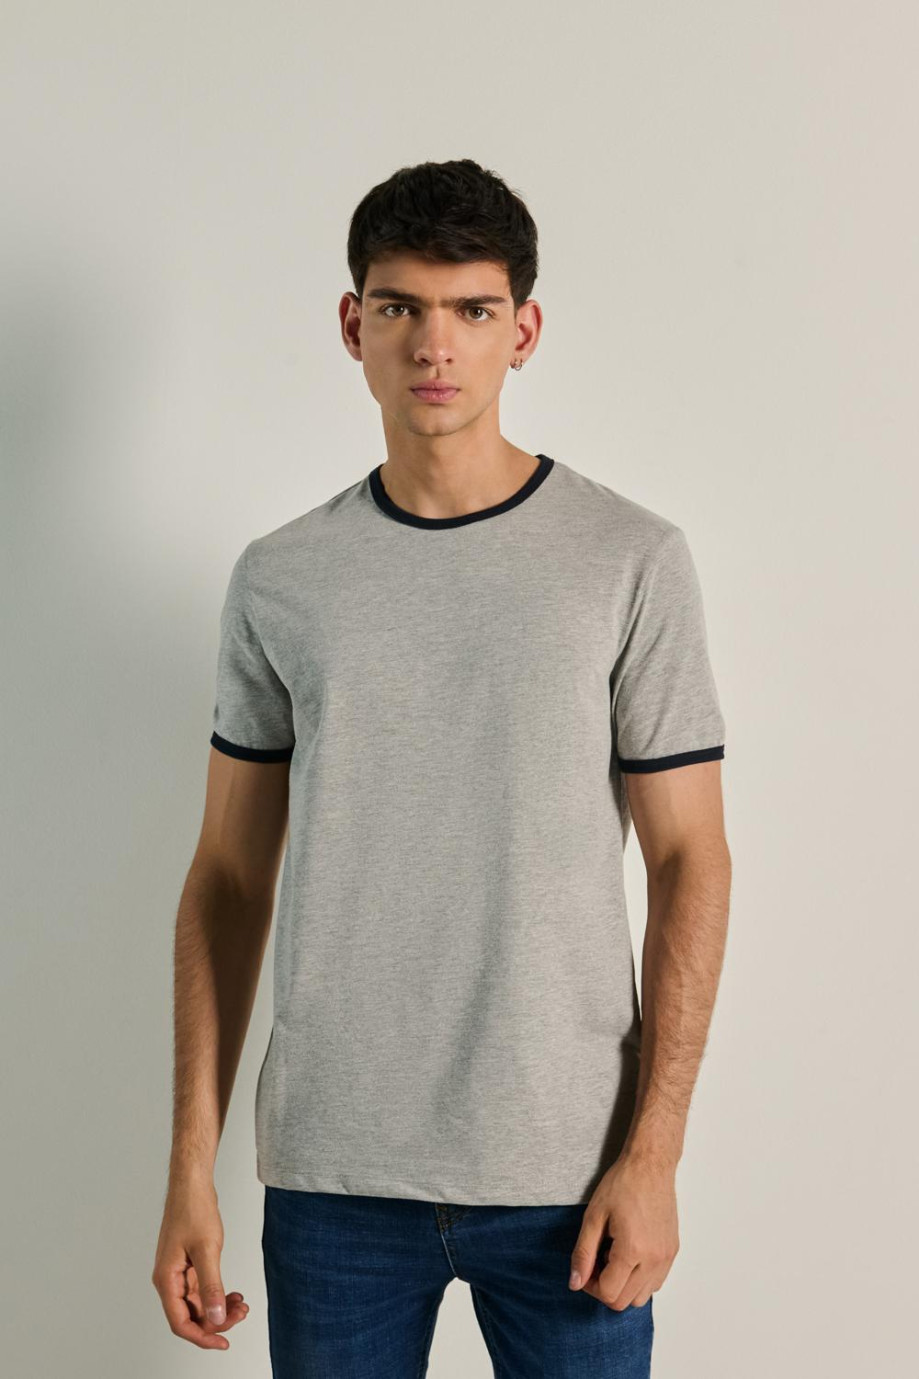 Camiseta en algodón unicolor con contrastes y manga corta